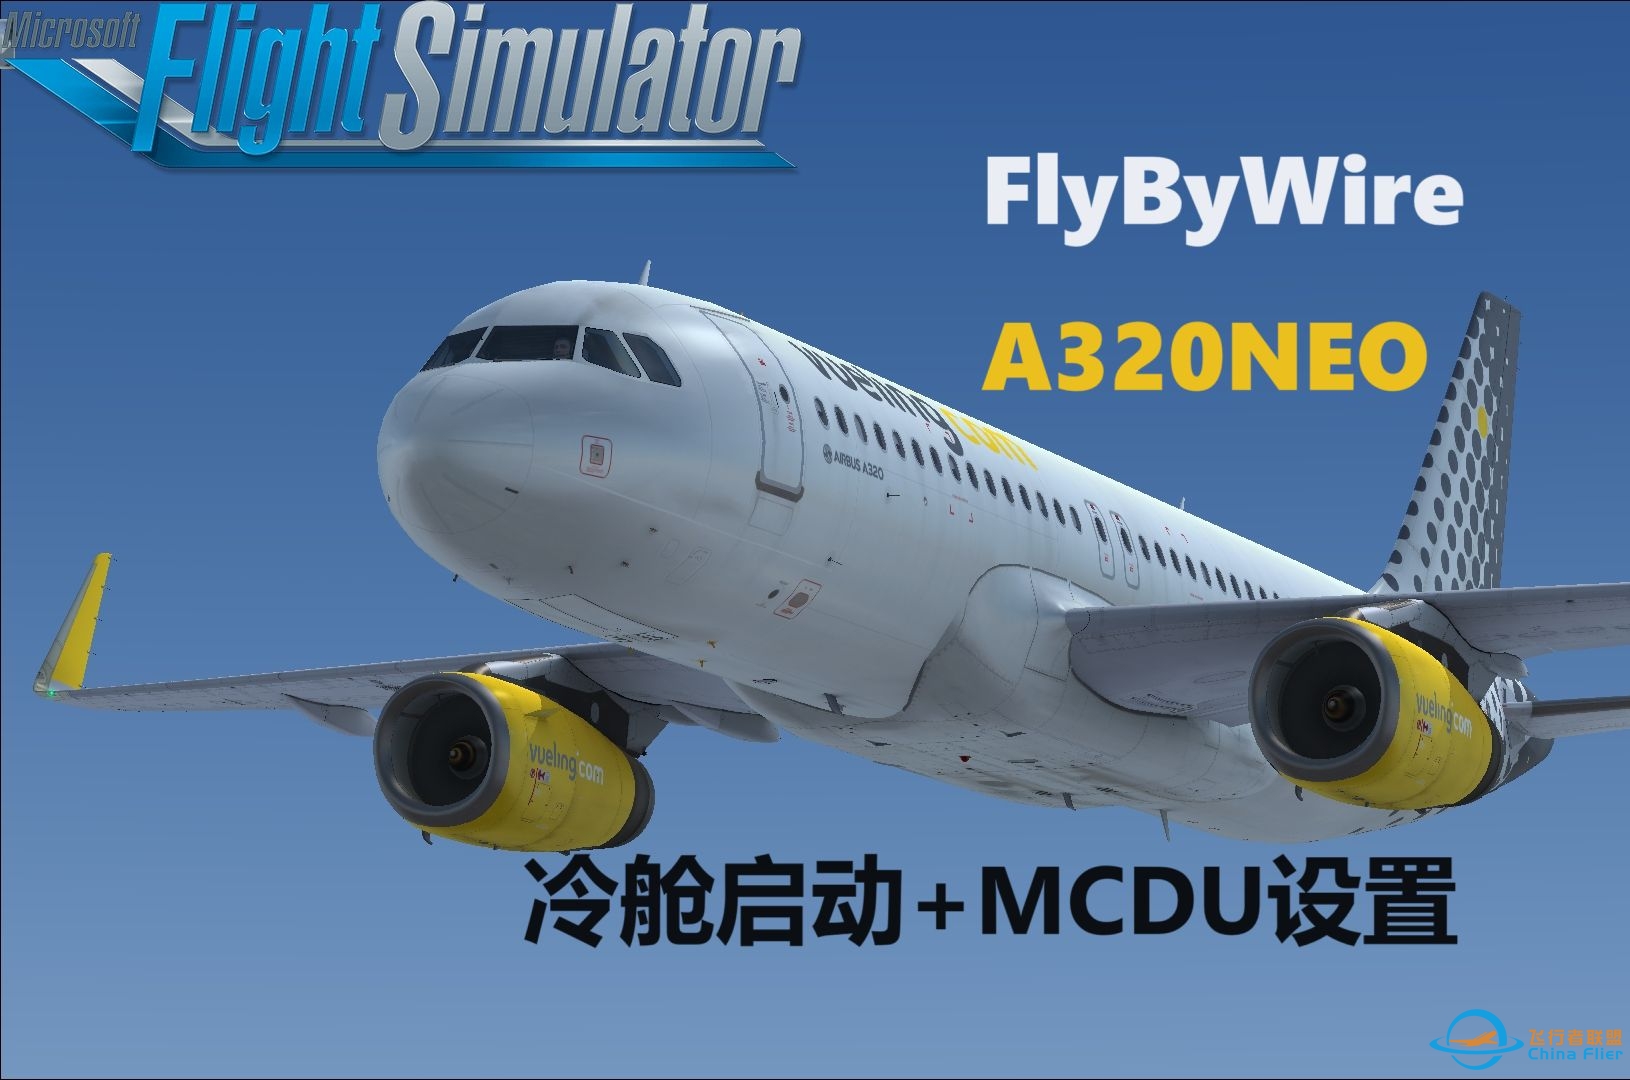 微软飞行模拟2020：FlyByWire A320NEO冷舱启动教学 | 从MCDU到滑行一步搞定-1468 